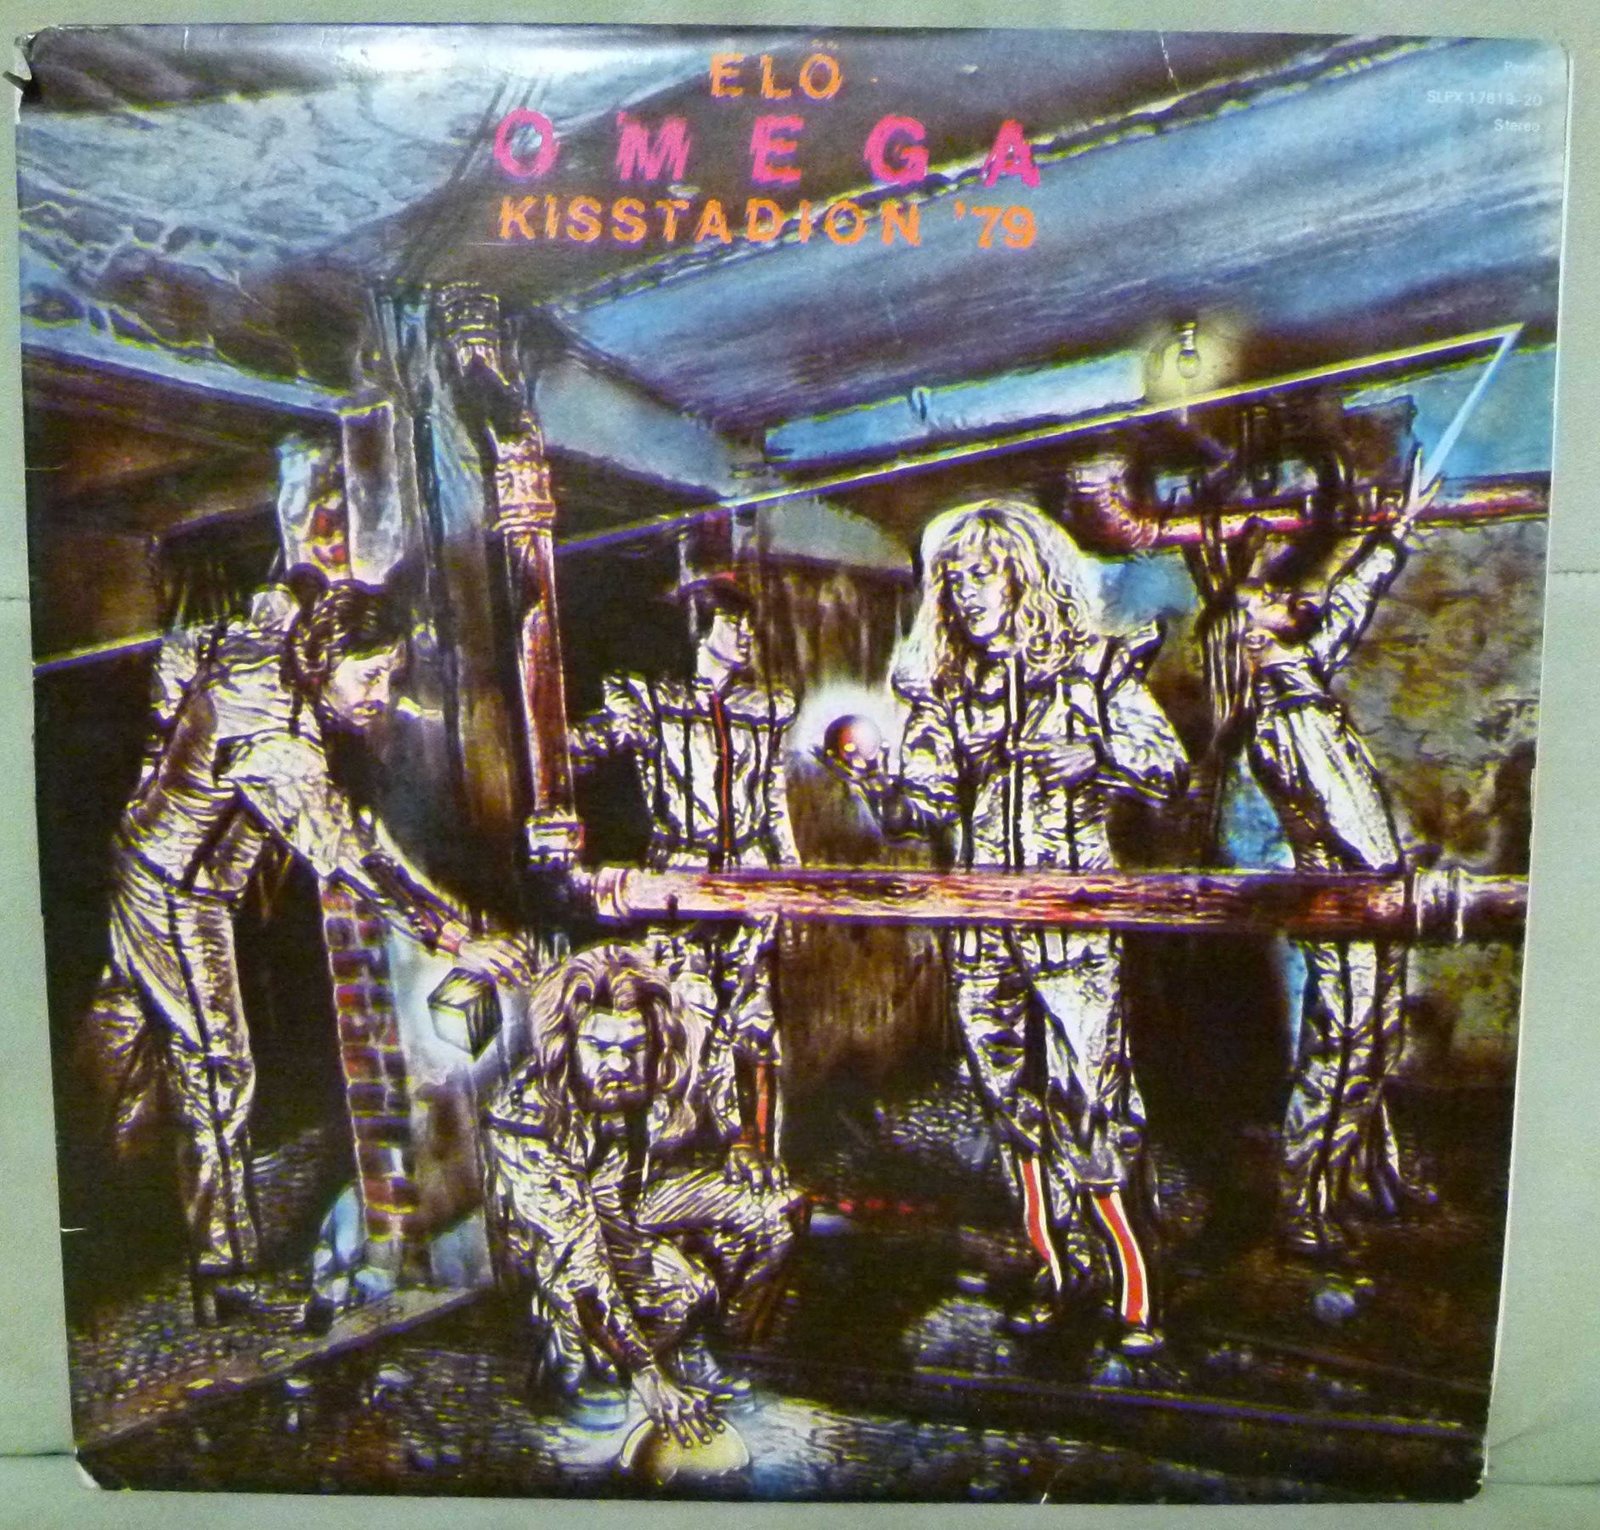 Omega 1979 Kisstadion LP face ппп.jpg